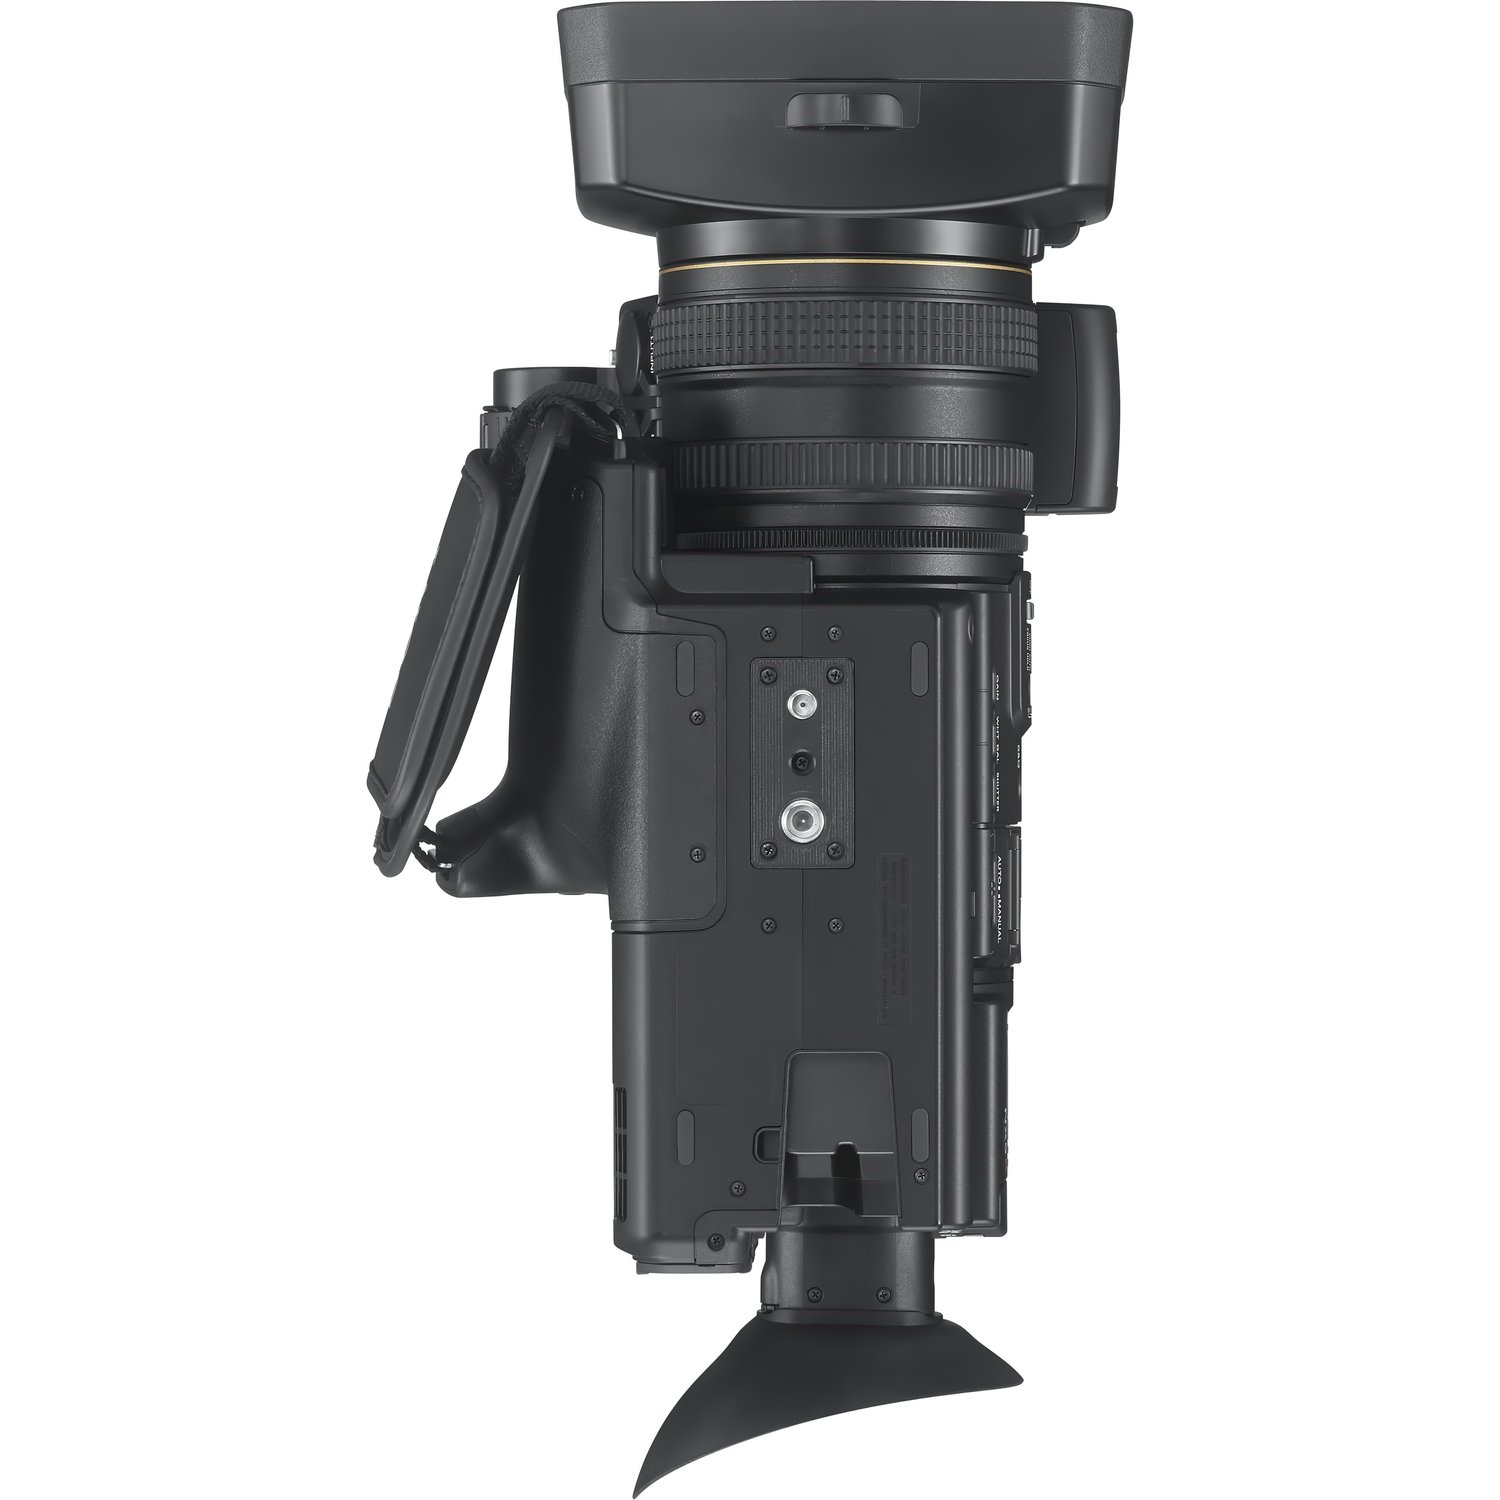 Видеокамера SONY HXR-NX5R + ECM-XM1 фото 